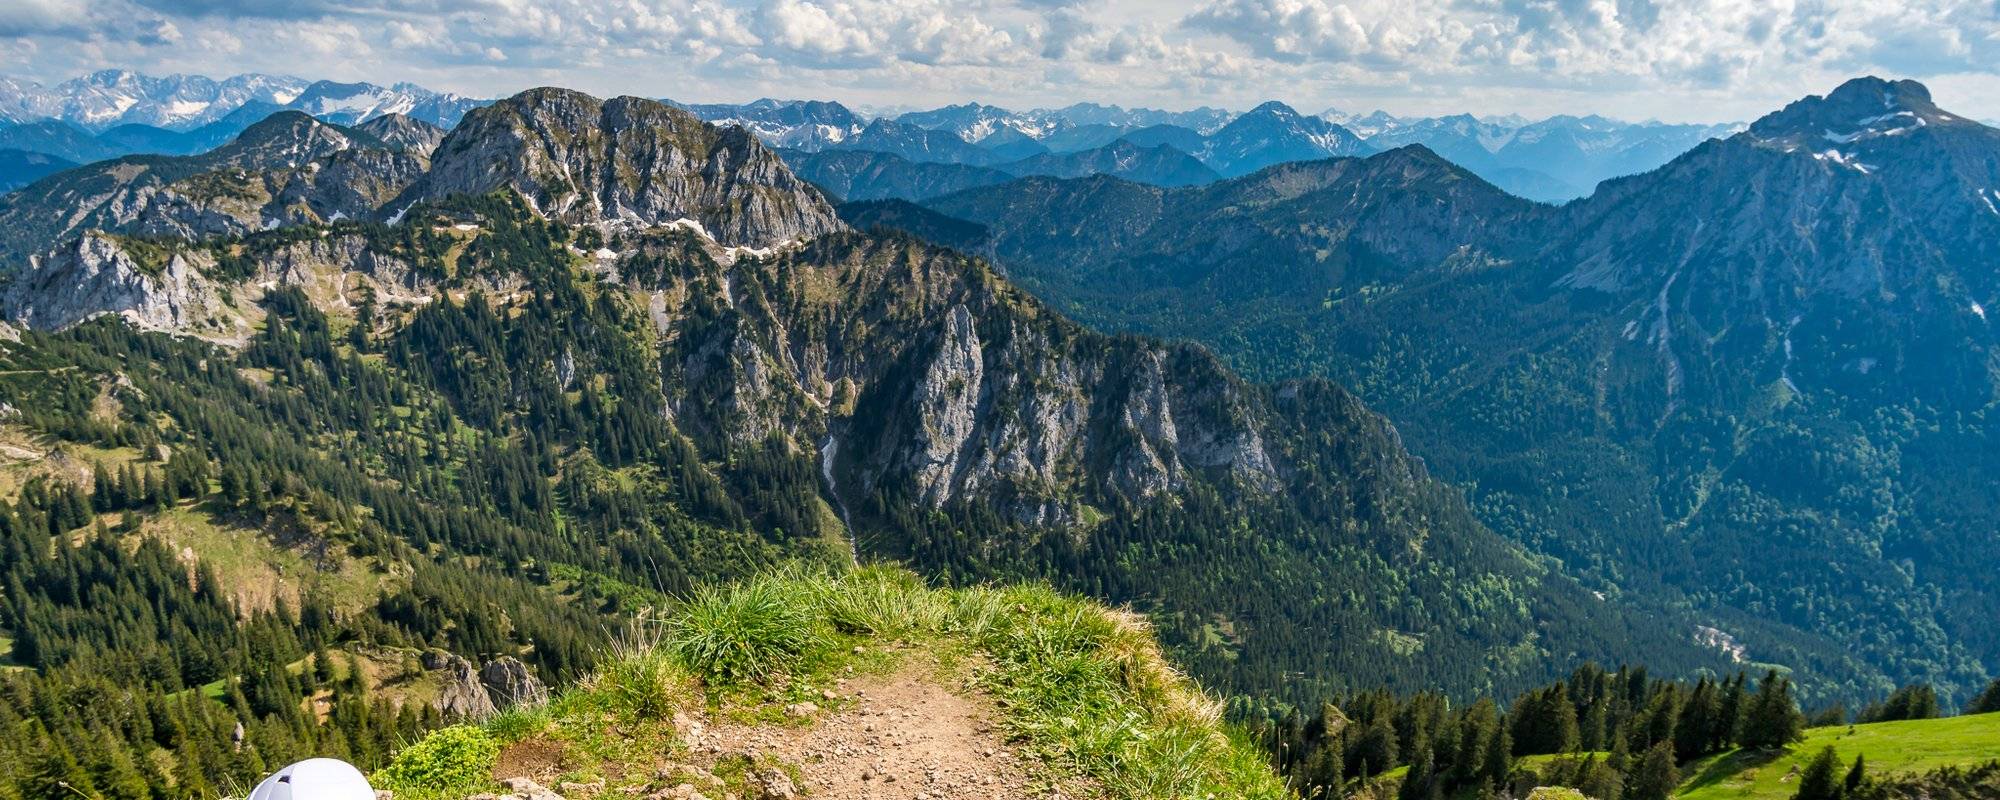 Climbing in the Ammergau Alps with fabulous views of Neuschwanstein Castle - Klettern in den Ammergauer Alpen mit märchenhafter Aussicht auf das Schloss Neuschwanstein [EN/DE]